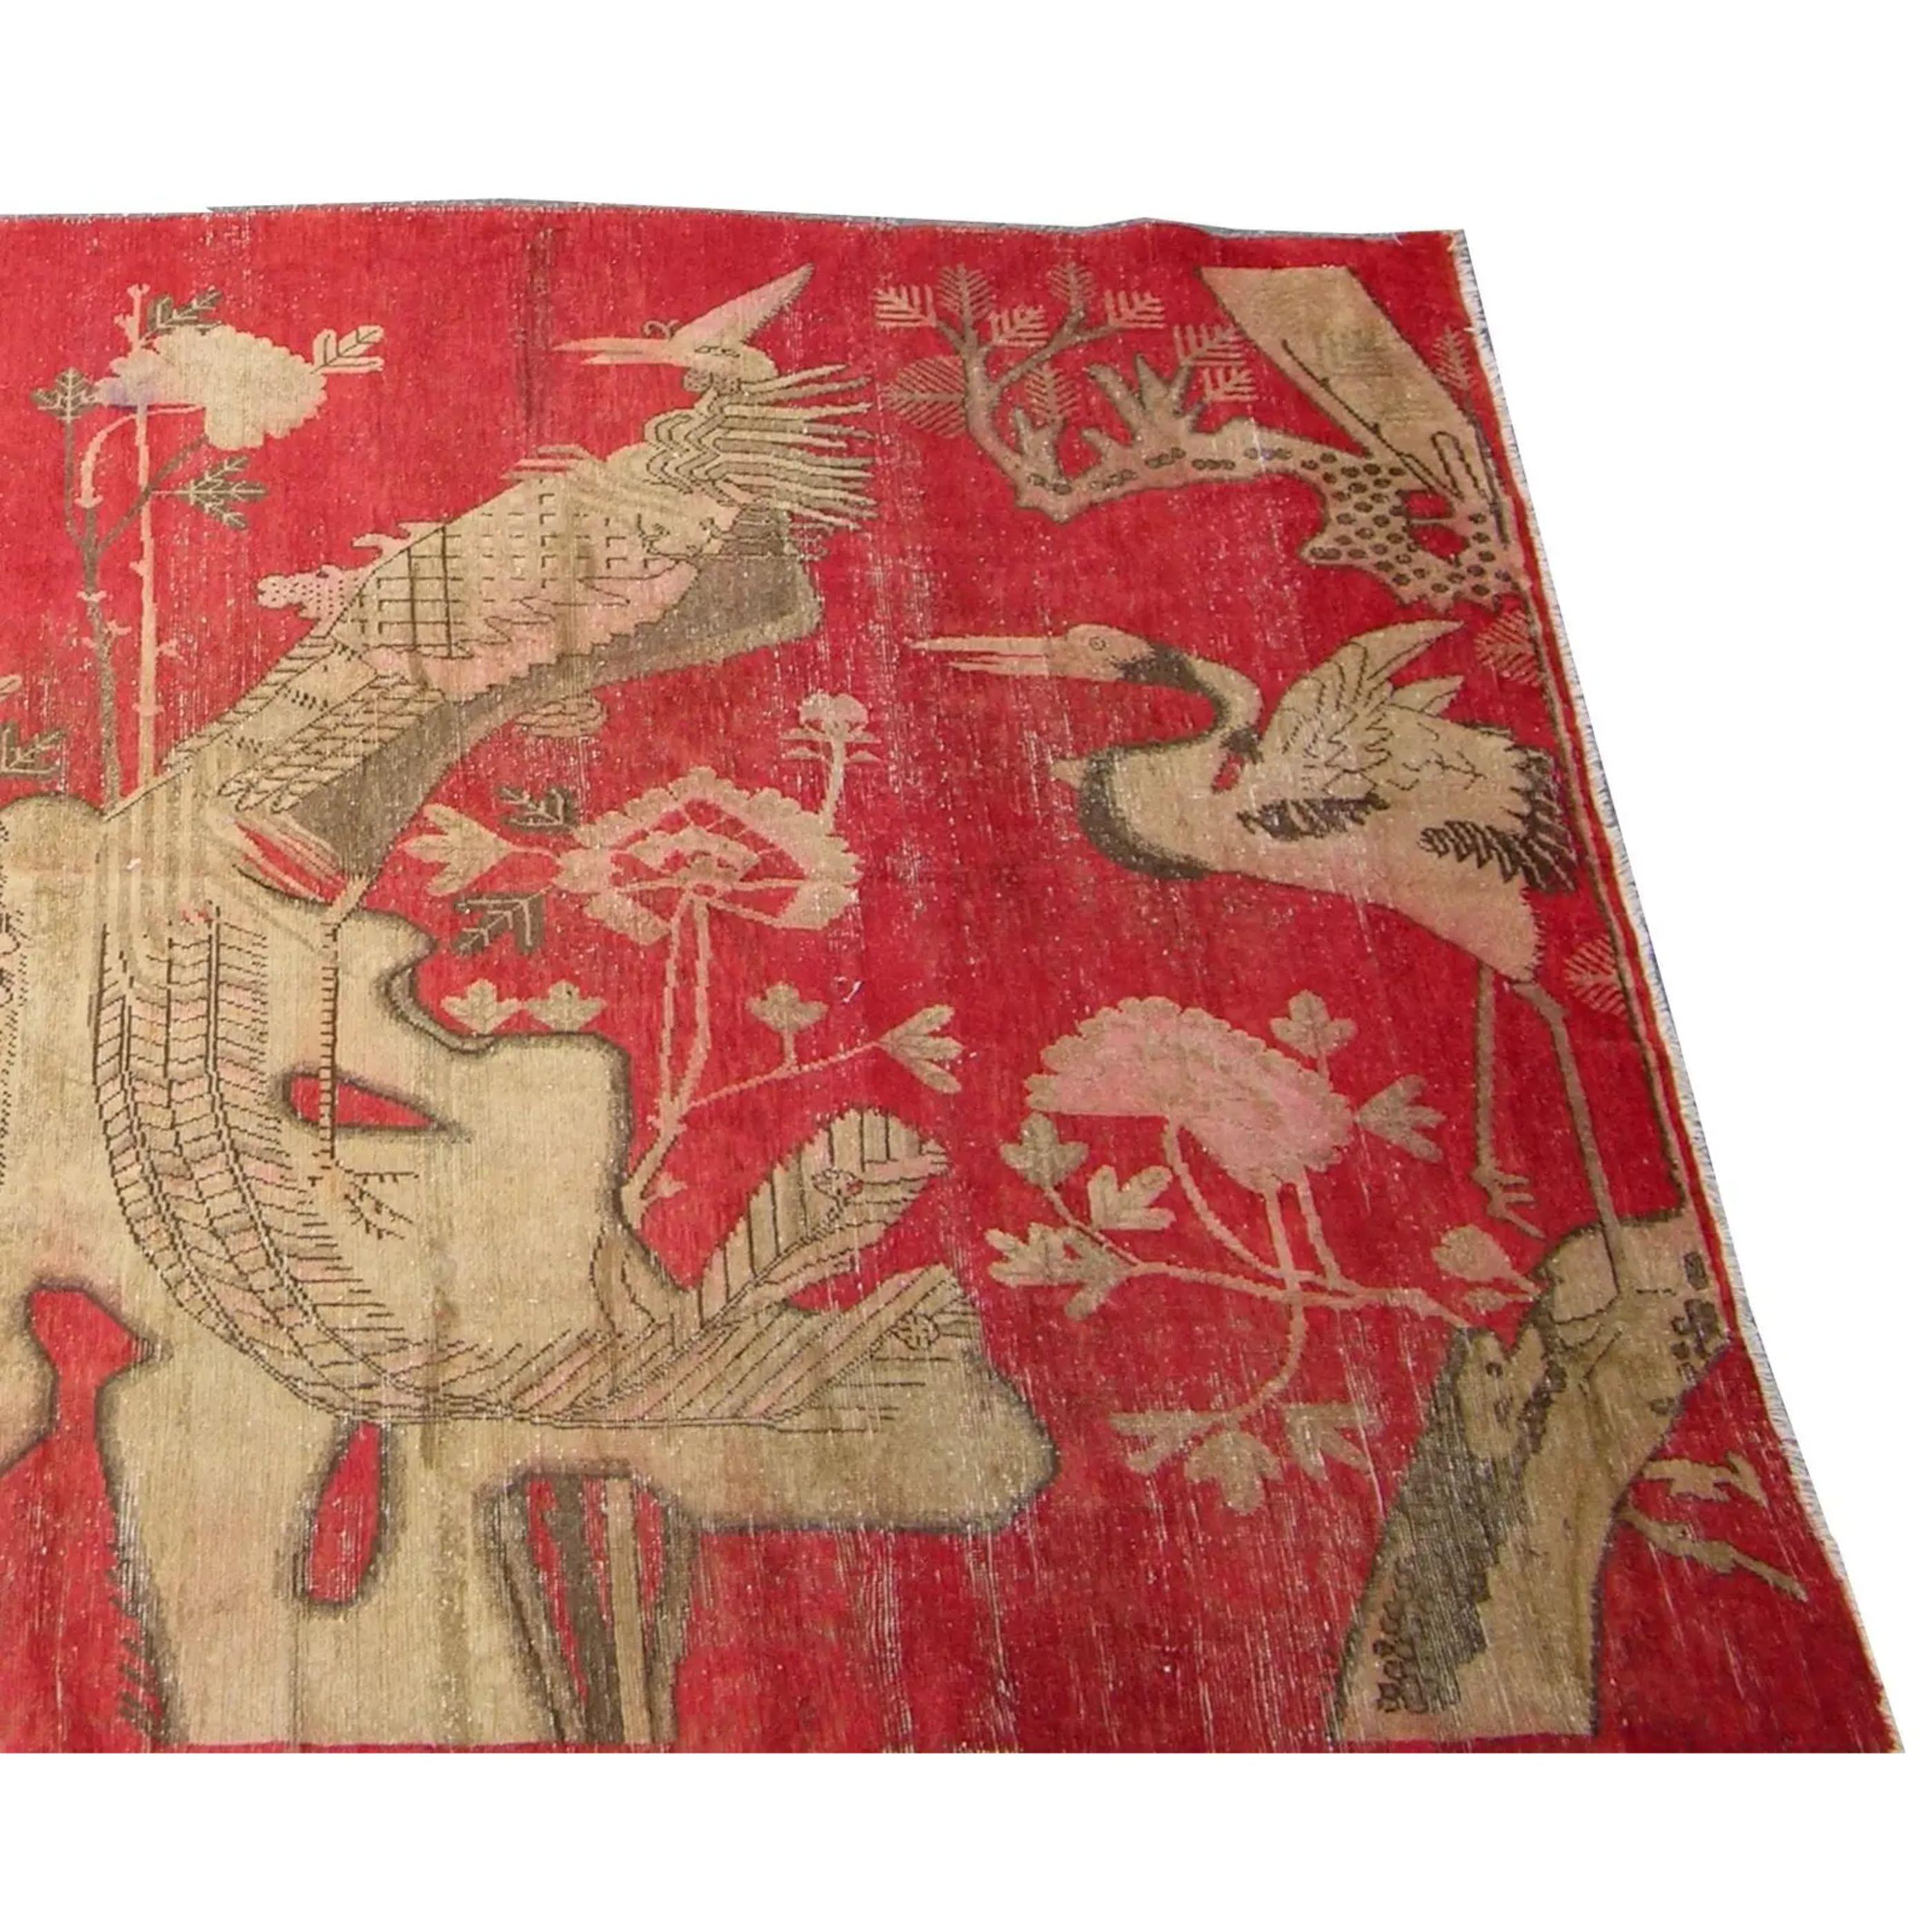 Zum Verkauf steht ein antiker Khotan-Samarkand-Teppich mit Vogelmotiven auf rotem Grund.